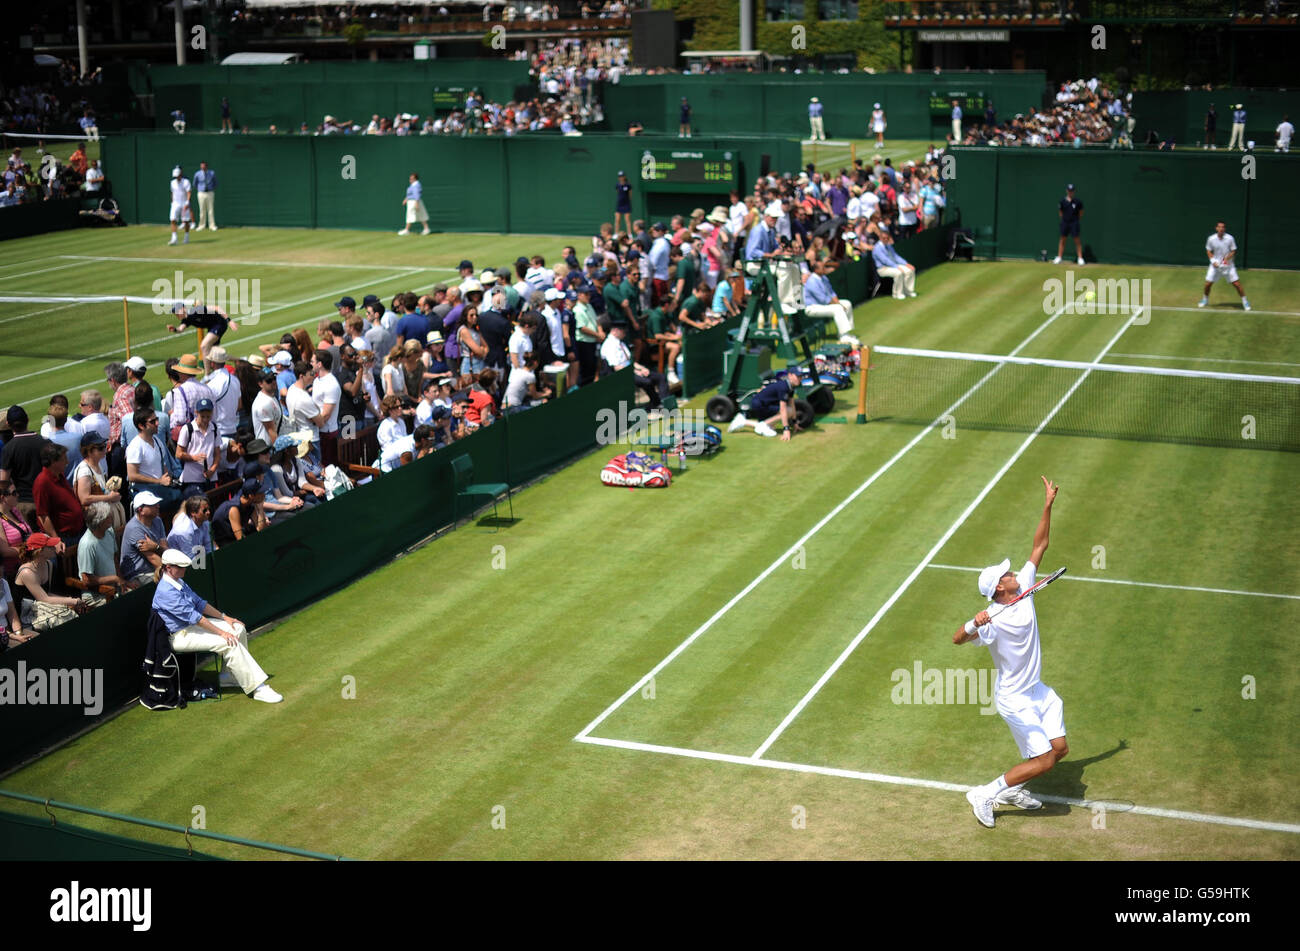 Una vista del gioco attraverso i campi 8 e 9 durante il quarto giorno dei Campionati di Wimbledon 2012 all'All England Lawn Tennis Club, Wimbledon. Foto Stock